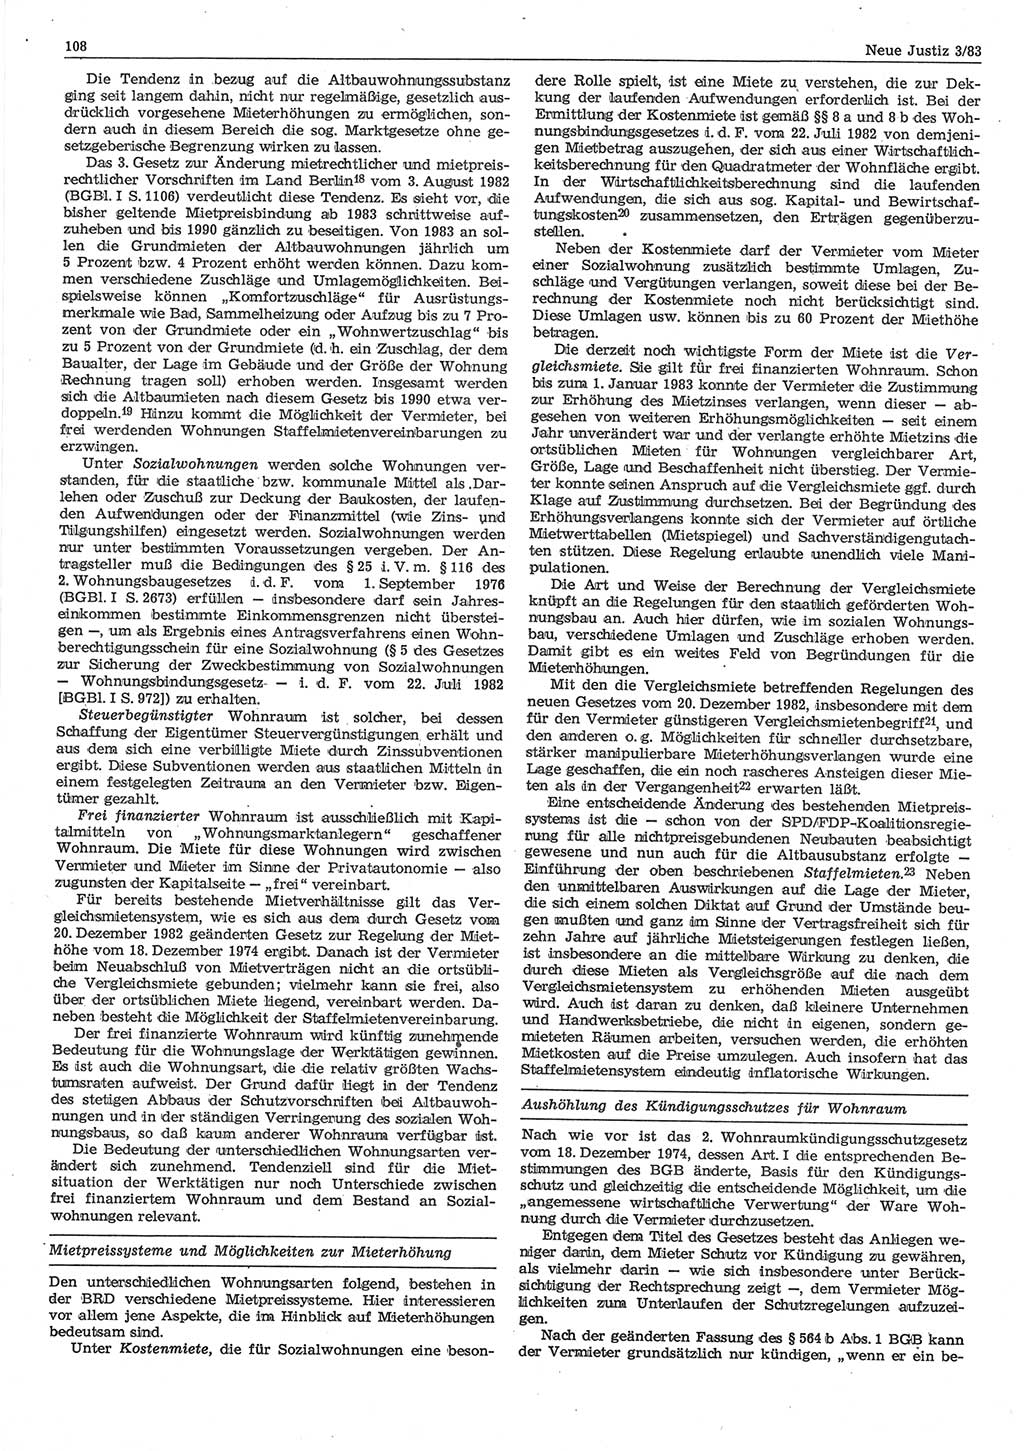 Neue Justiz (NJ), Zeitschrift für sozialistisches Recht und Gesetzlichkeit [Deutsche Demokratische Republik (DDR)], 37. Jahrgang 1983, Seite 108 (NJ DDR 1983, S. 108)